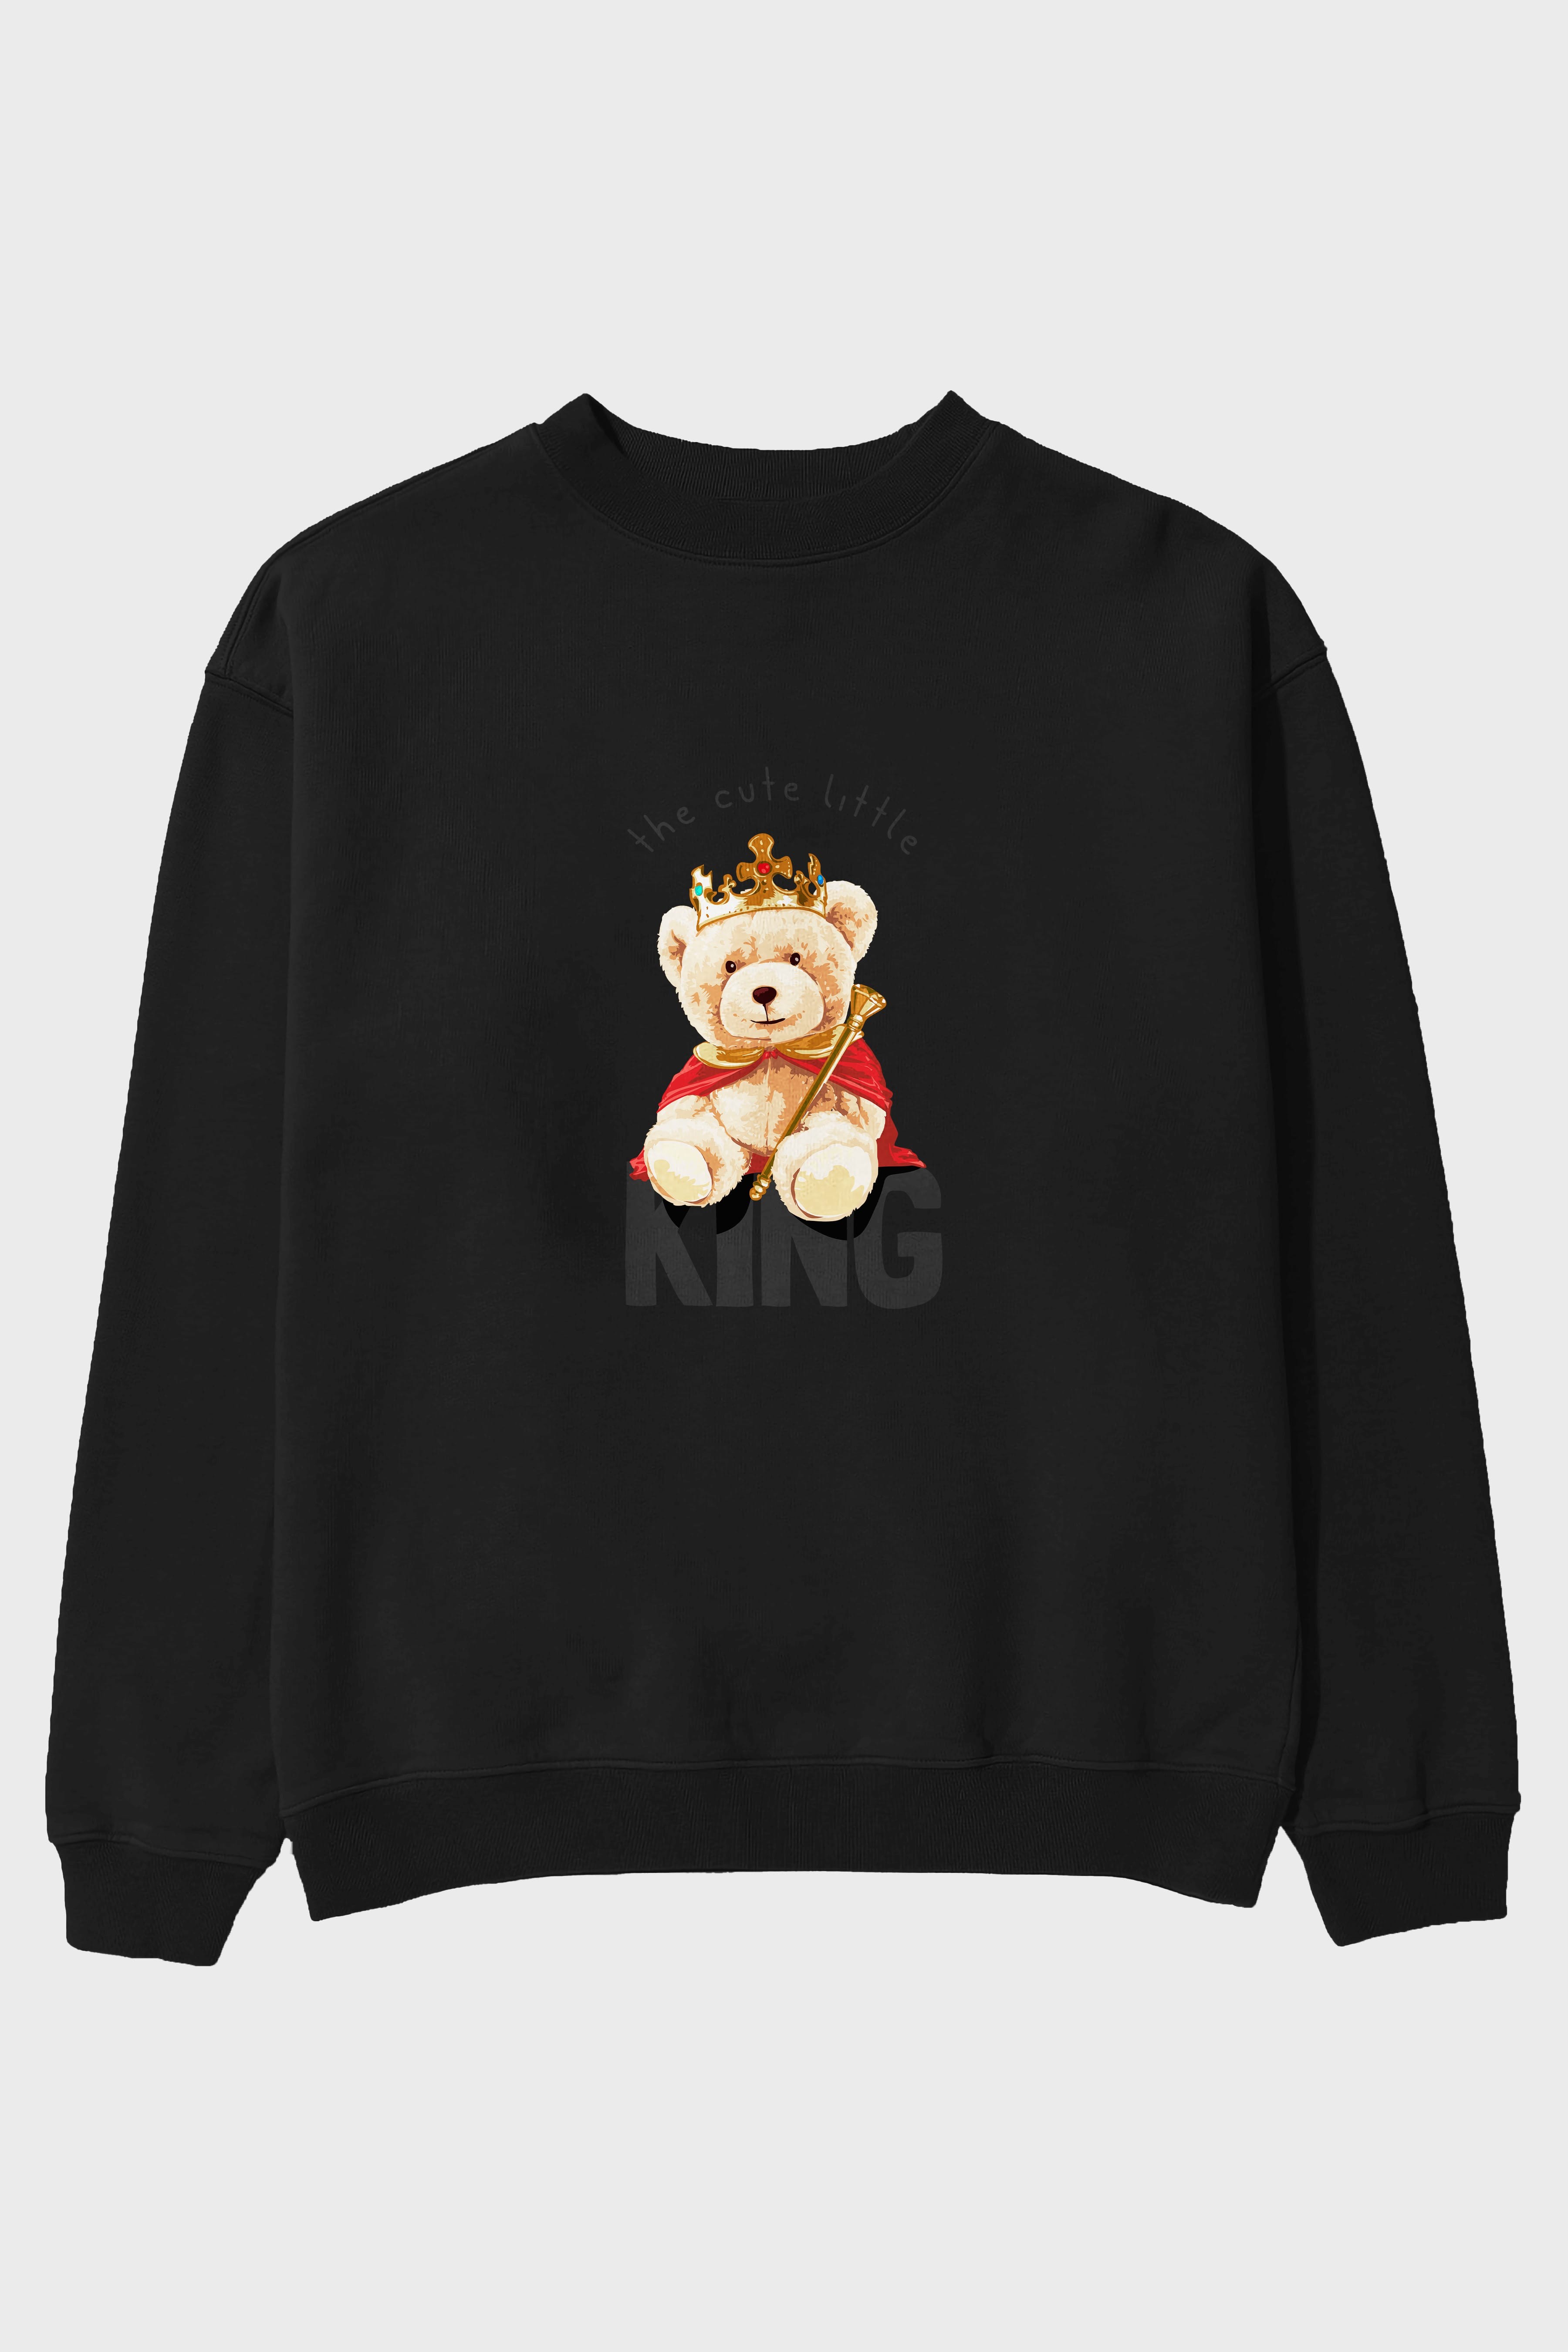 Teddy Bear King Ön Baskılı Oversize Sweatshirt Erkek Kadın Unisex